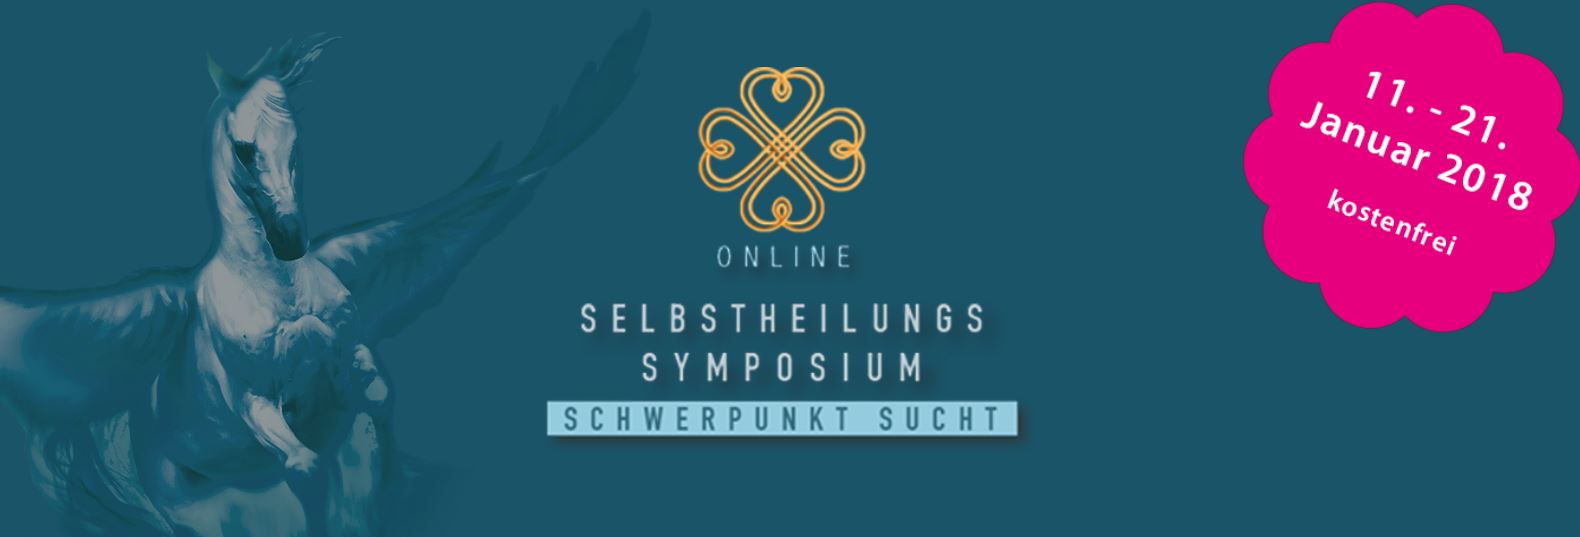 Online-Selbstheilungskonferenz - Thema Sucht